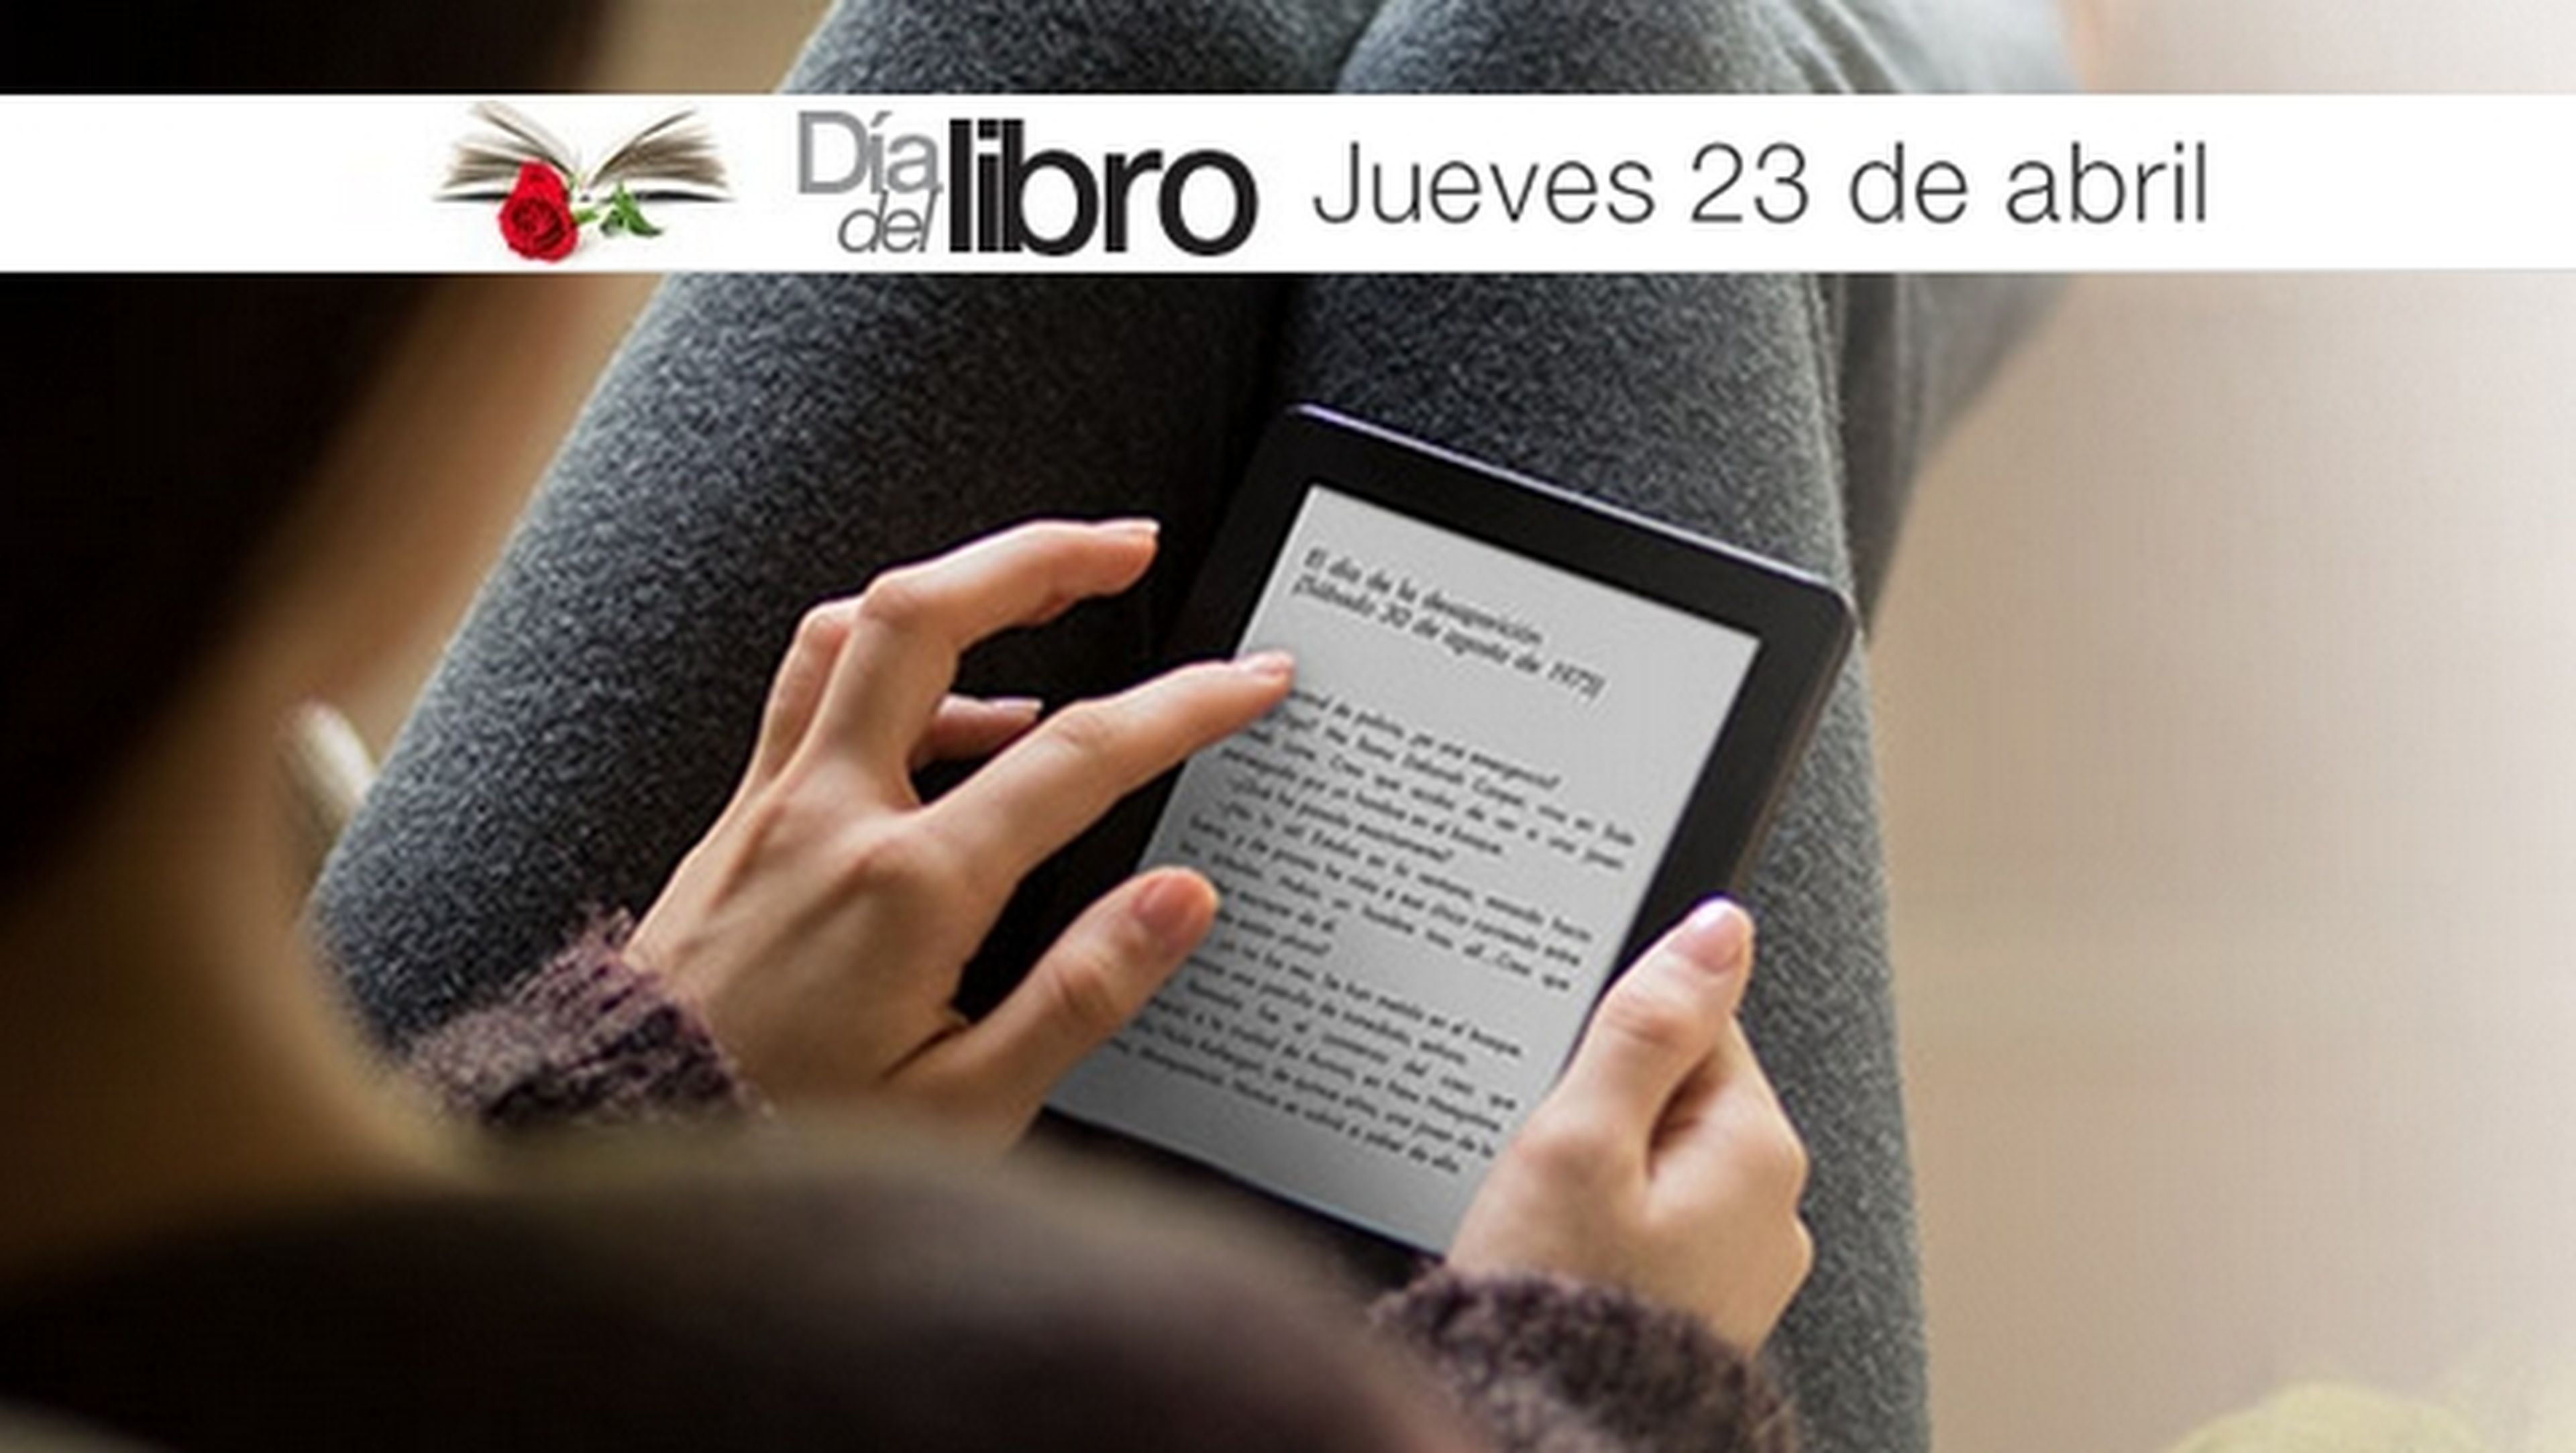 Día del Libro en Amazon: Kindle Paperwhite rebajado a 99€ y ebooks a 1€.